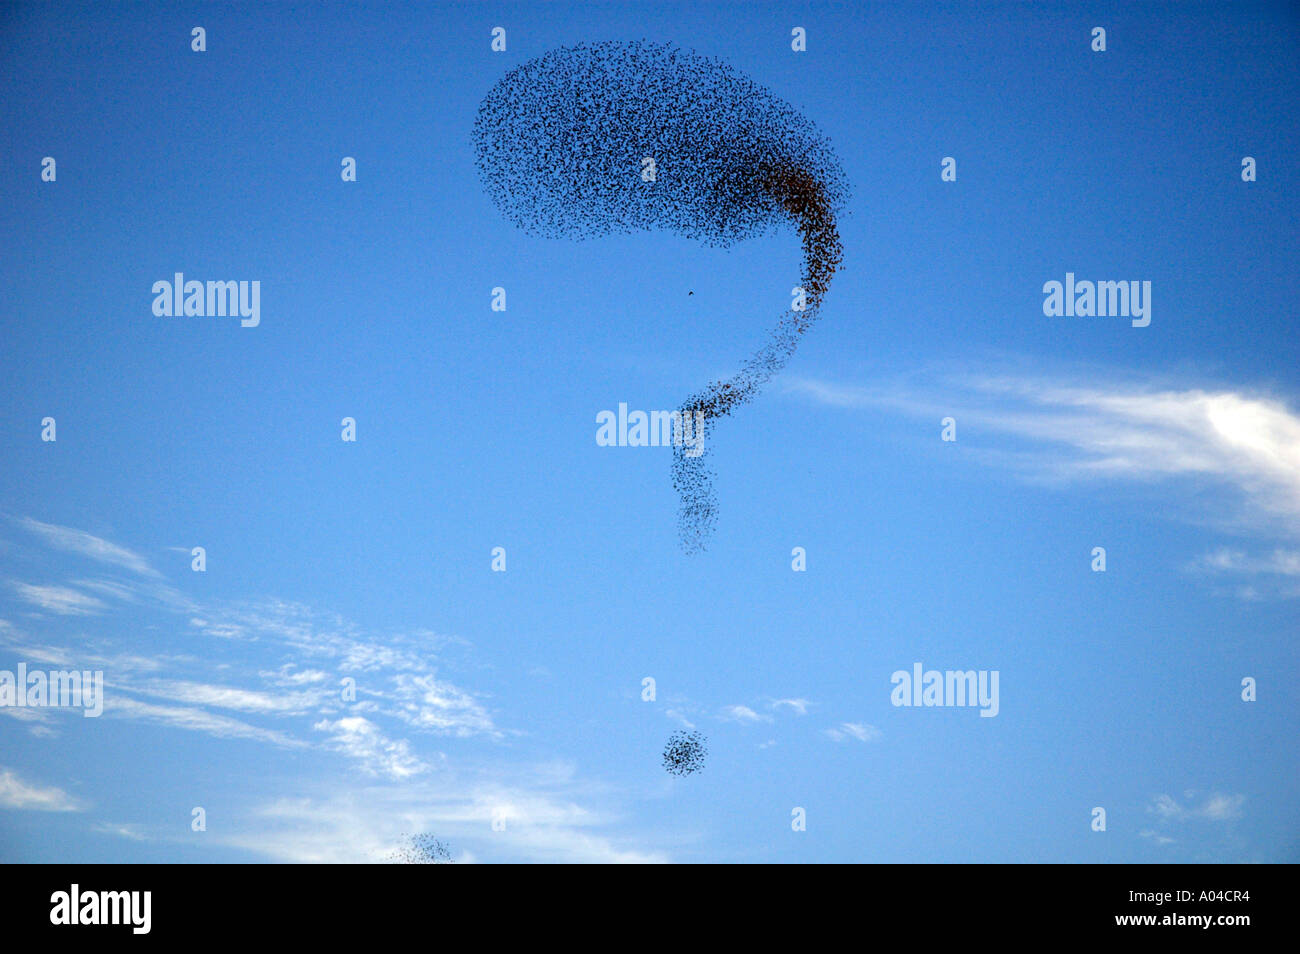 Una Bandada de estorninos forman un signo de interrogación en la formación en el cielo Foto de stock